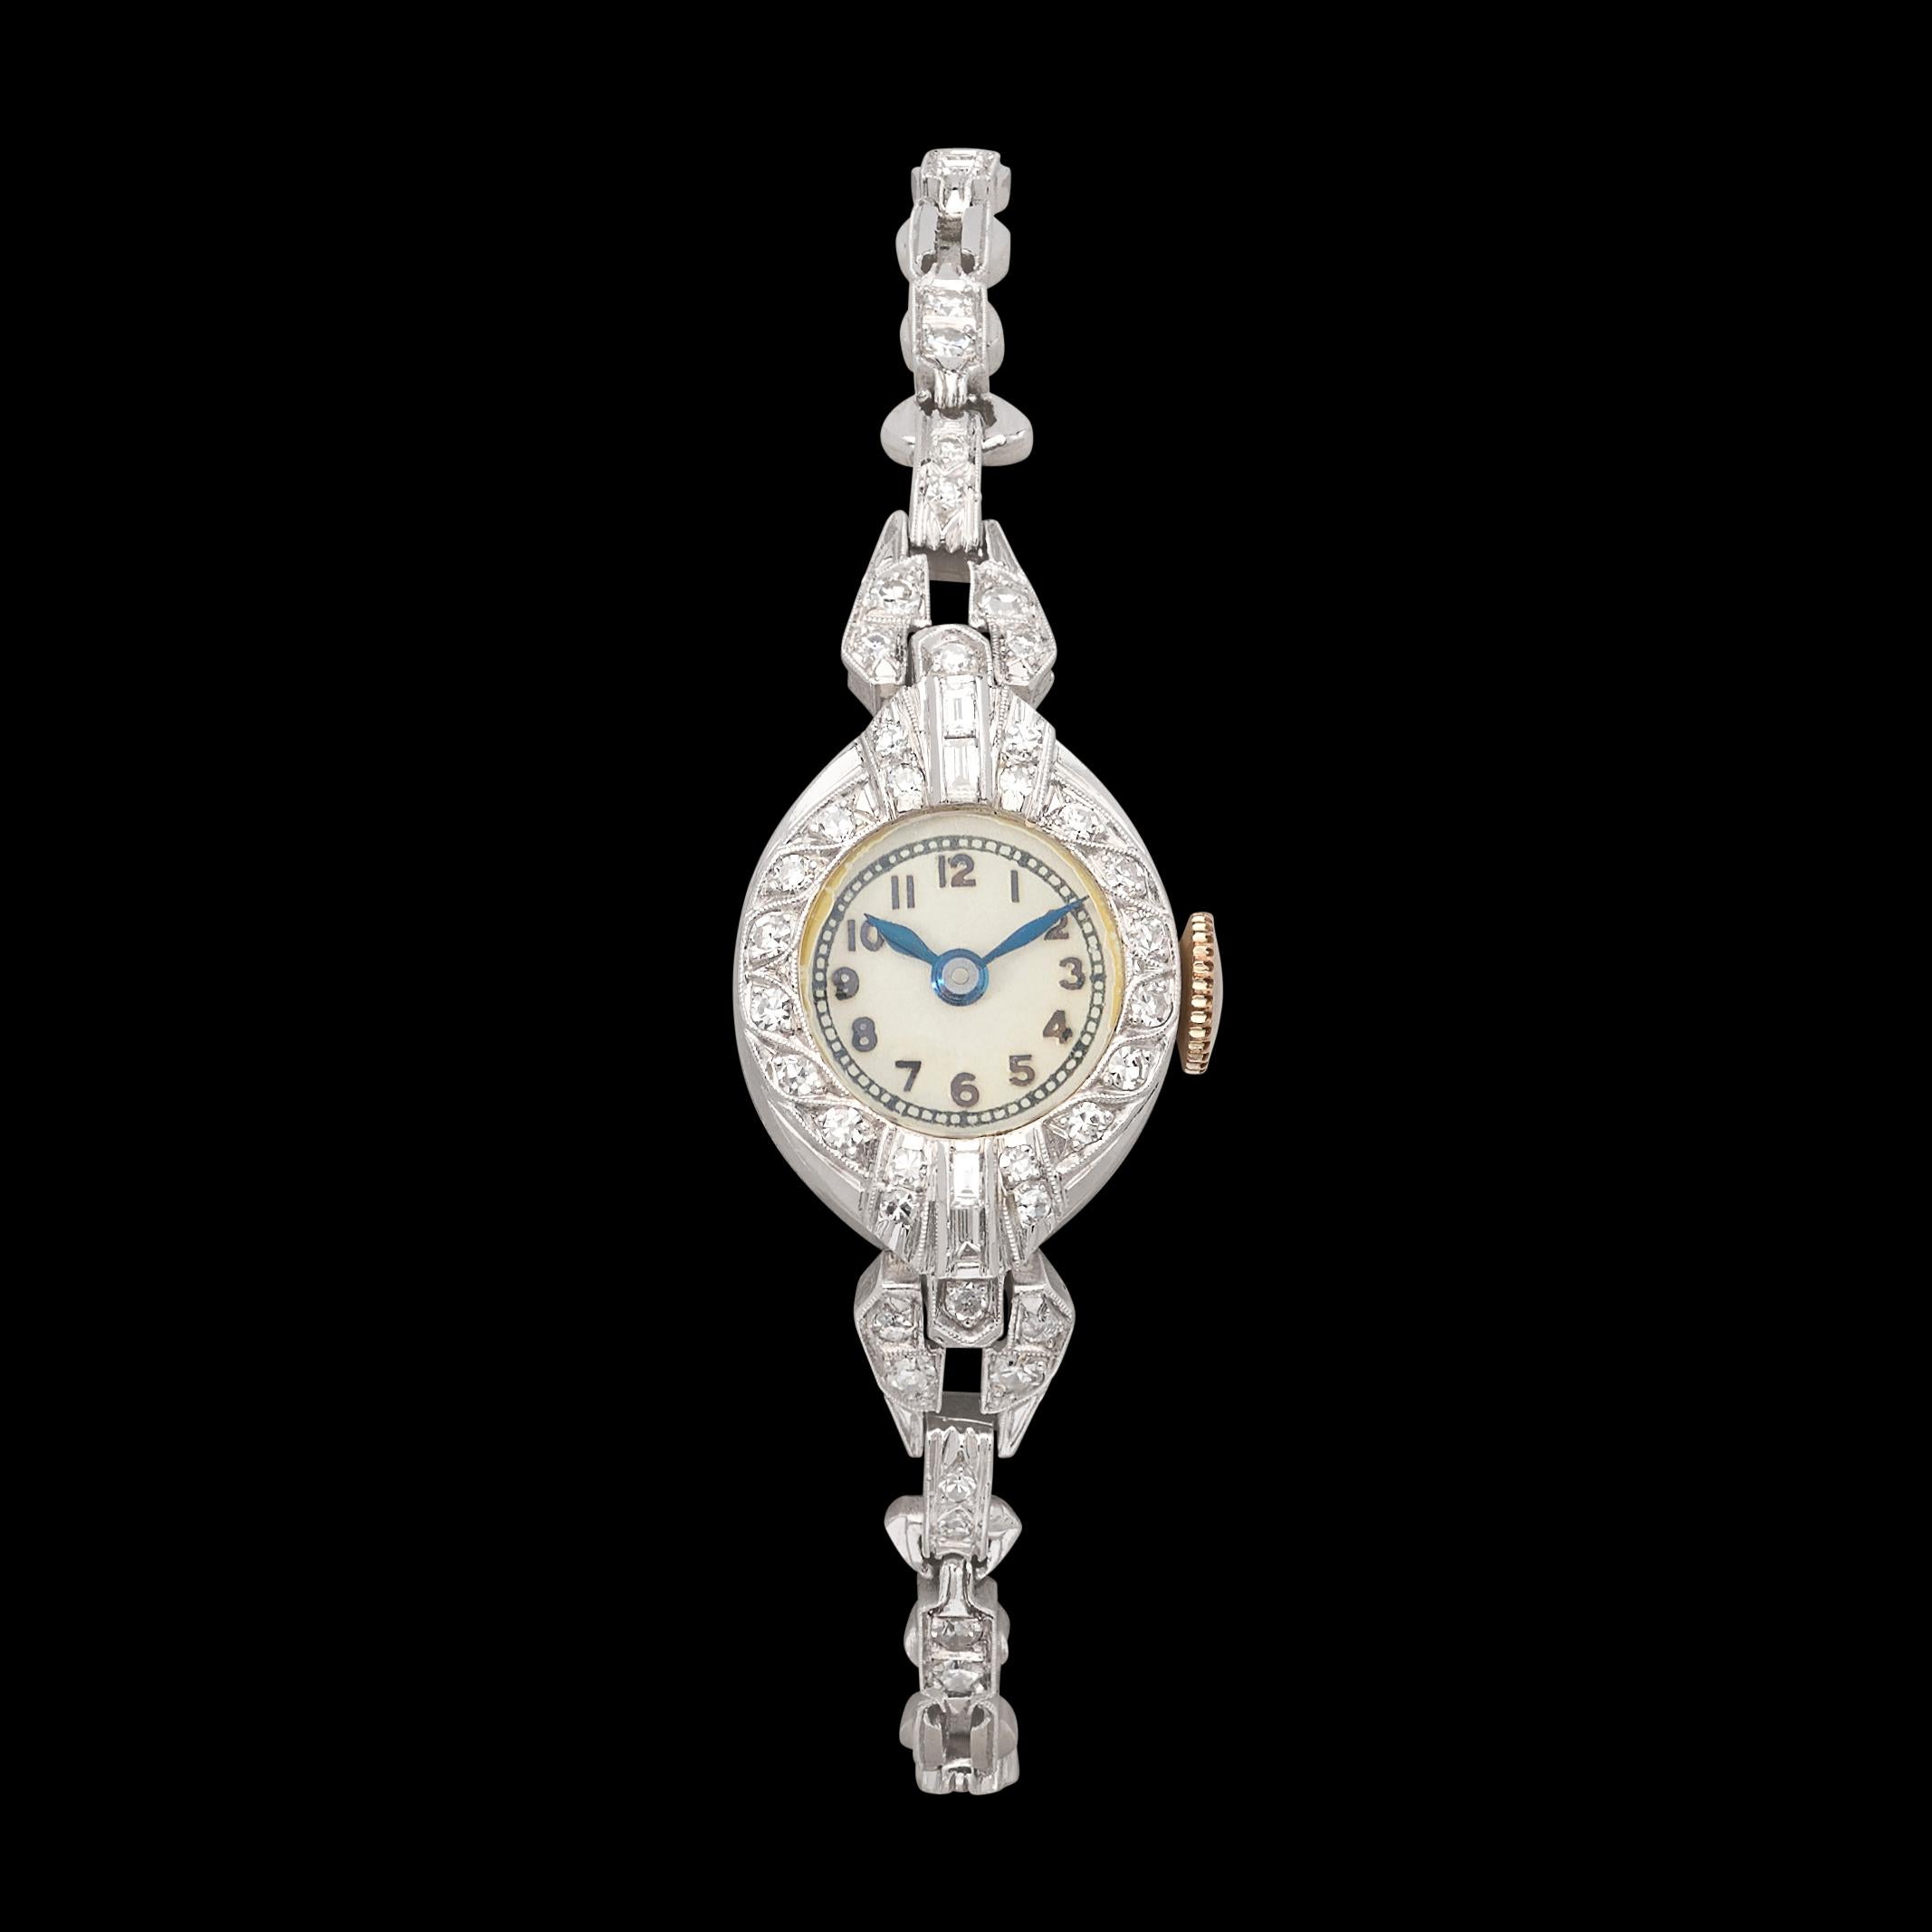 Man spürt förmlich die Geschichten, die diese Uhr in sich trägt, weil sie über die Jahre weitergegeben wurde. Diese schöne antike Platin-Diamantenuhr verfügt über etwa 52 funkelnde Diamanten von 0,80 Karat. Die Uhr ist noch in gutem Zustand und